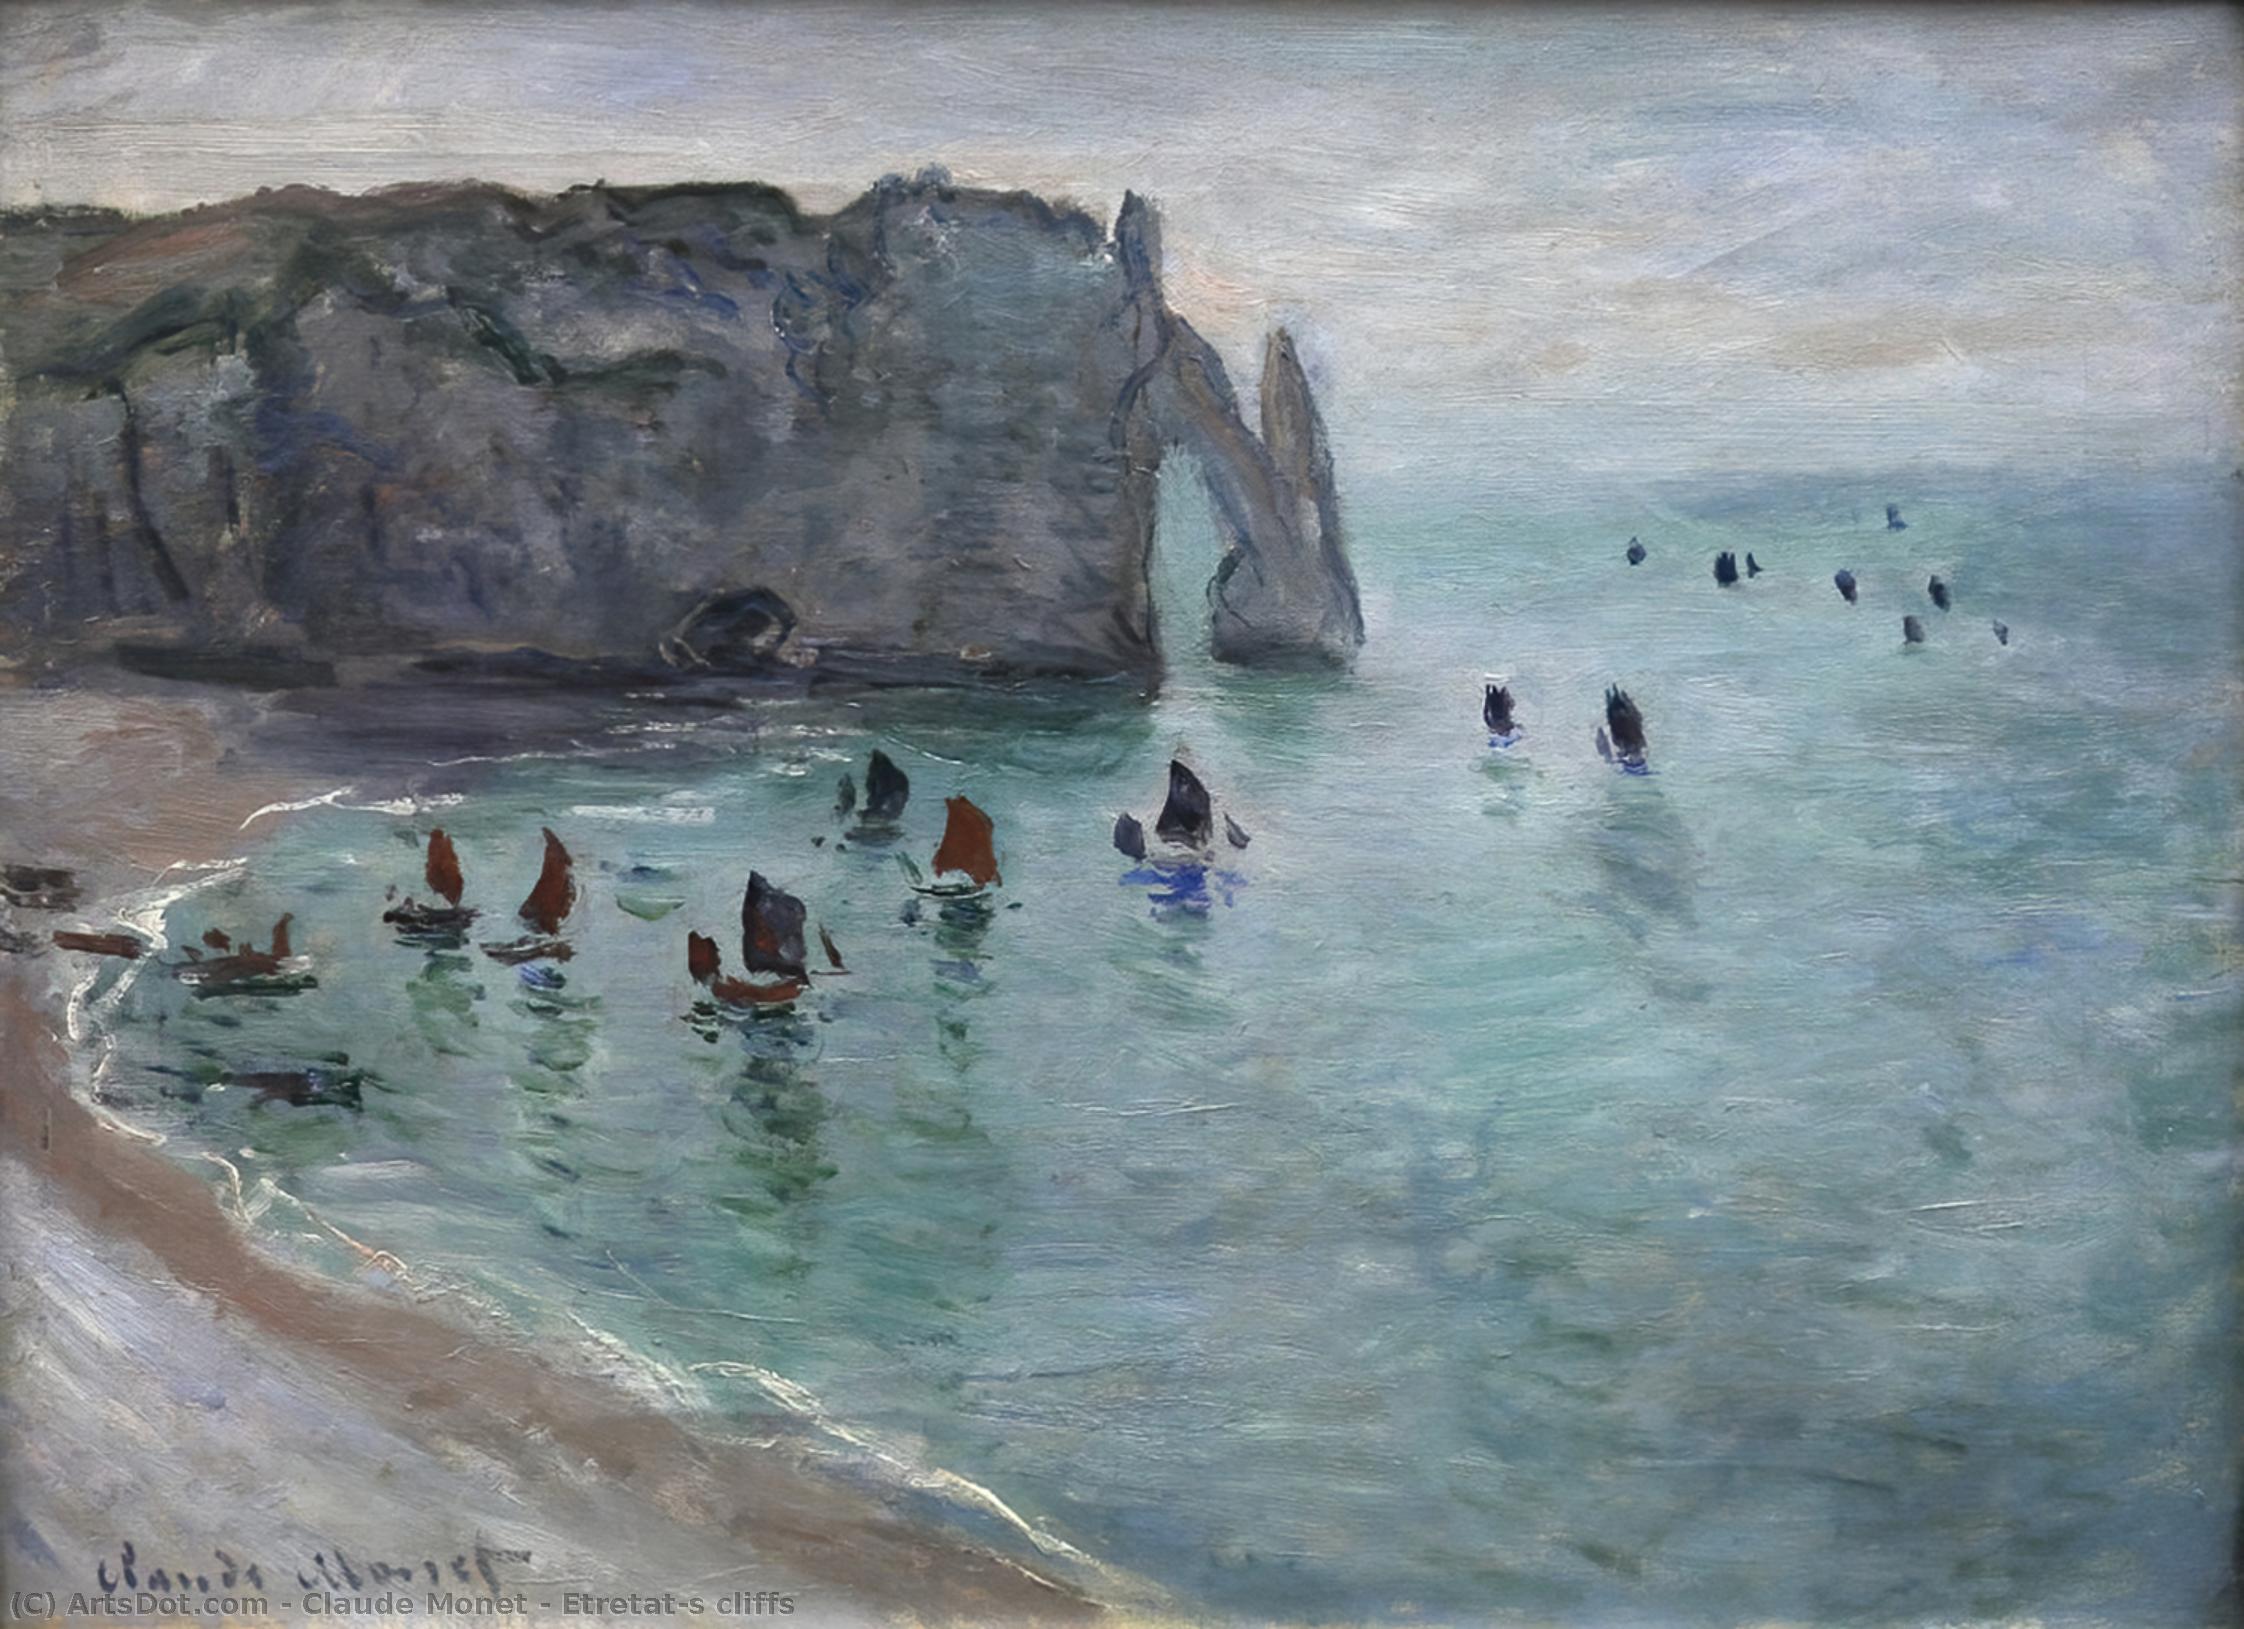 WikiOO.org - Enciclopedia of Fine Arts - Pictura, lucrări de artă Claude Monet - Etretat's cliffs